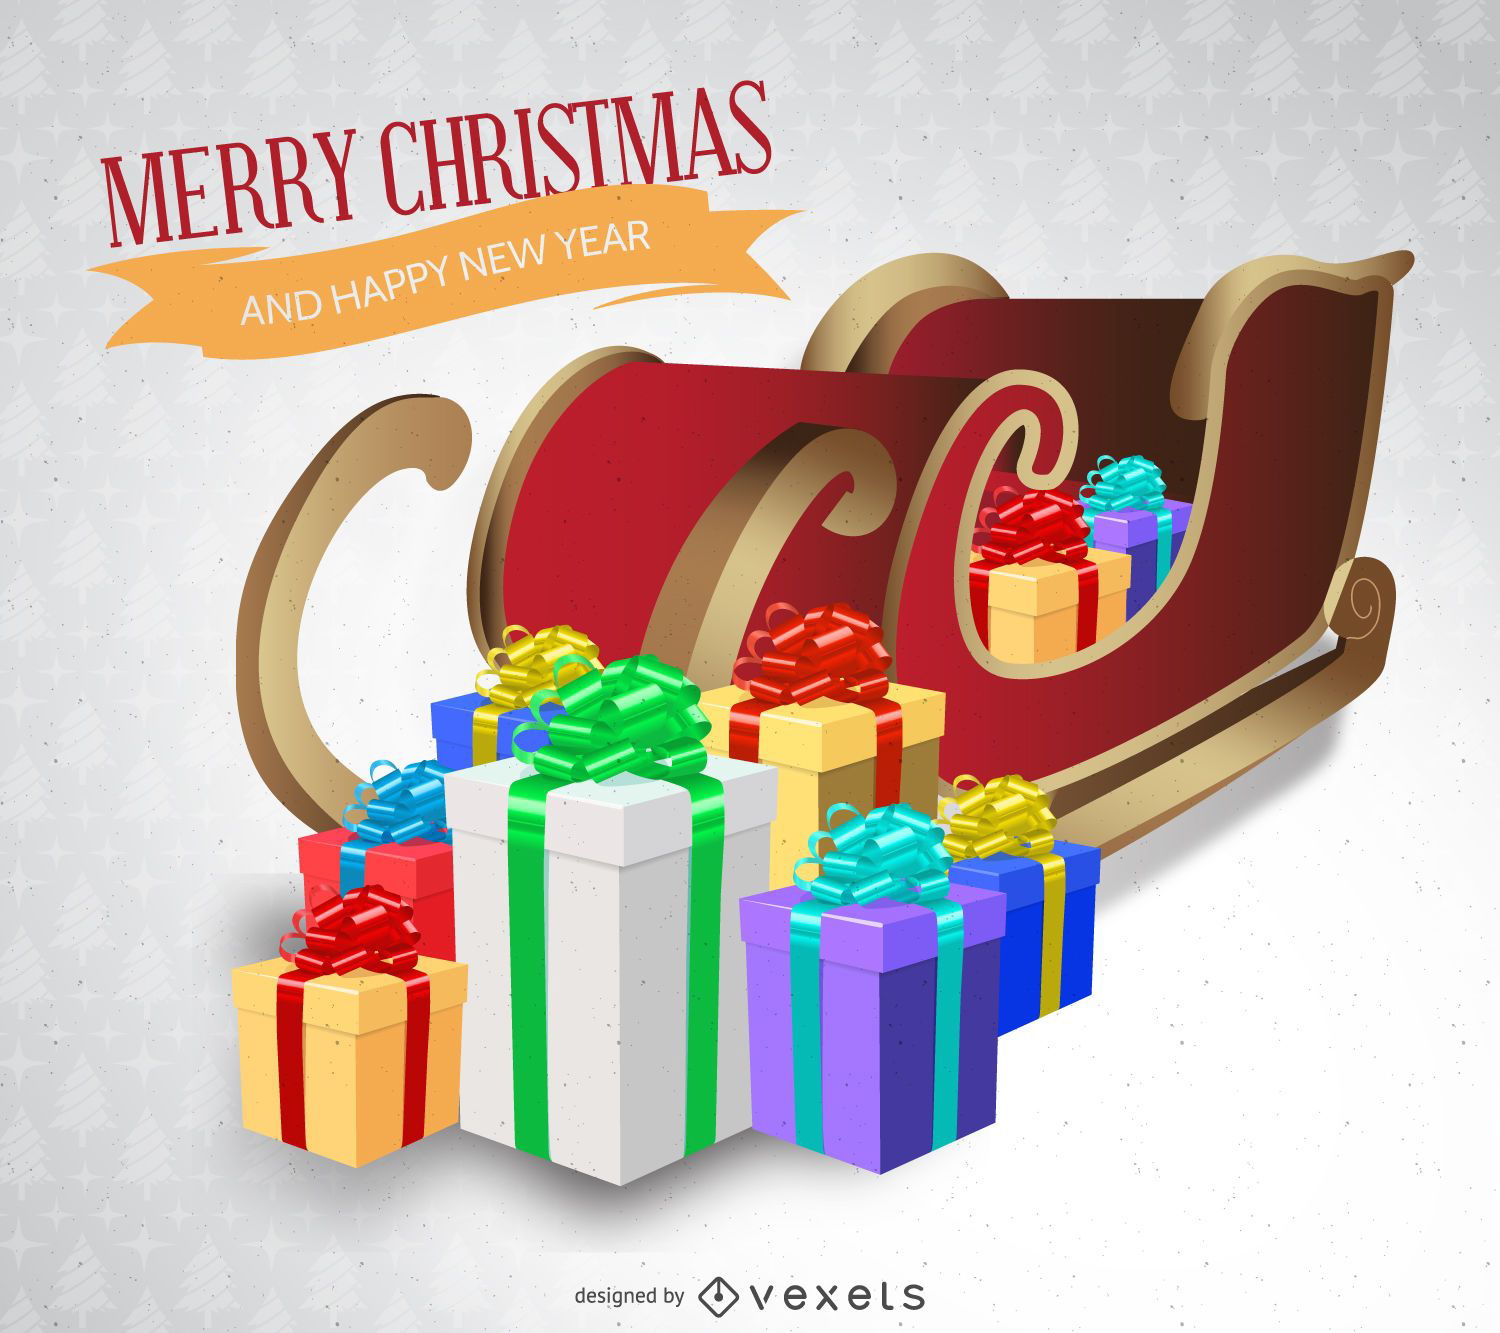 Christmas card with 3D sleigh